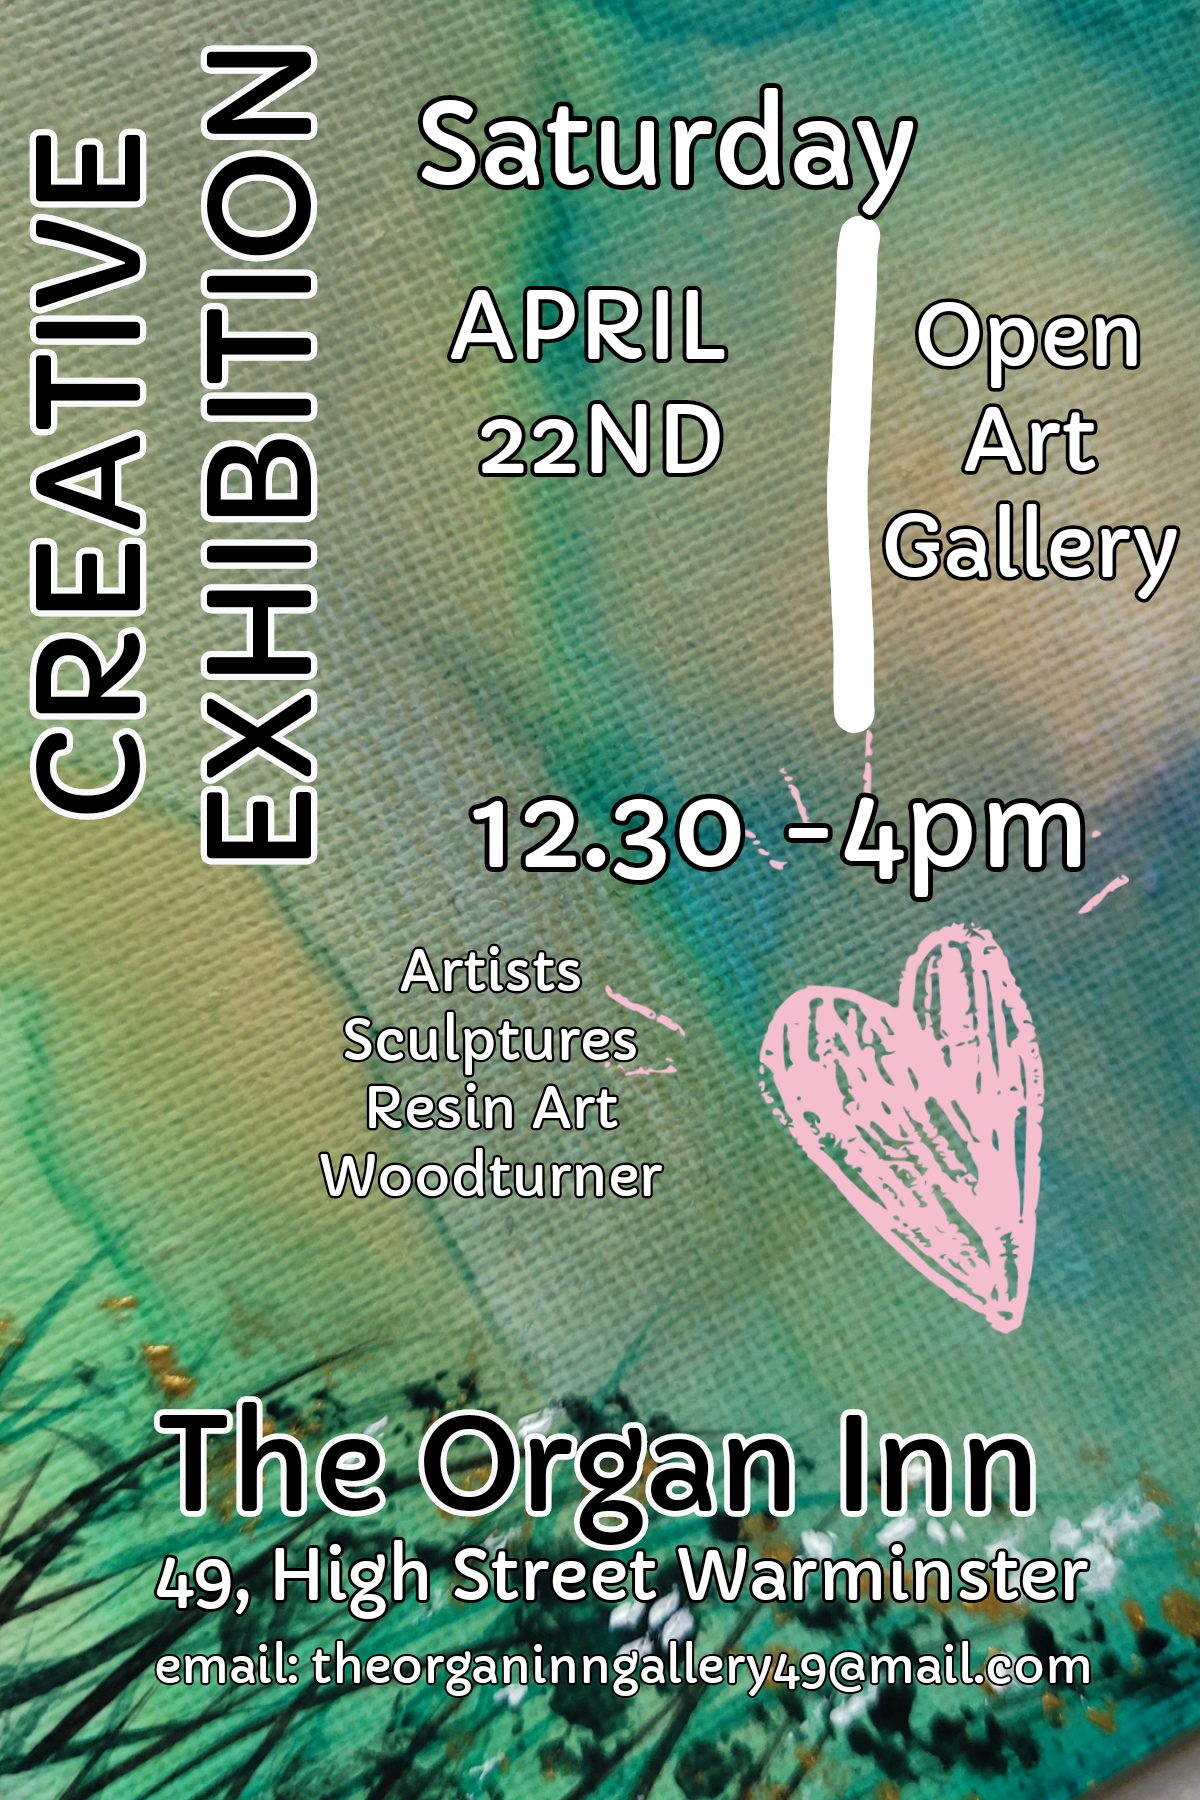 The Organ Inn - Creative Art Exhibition